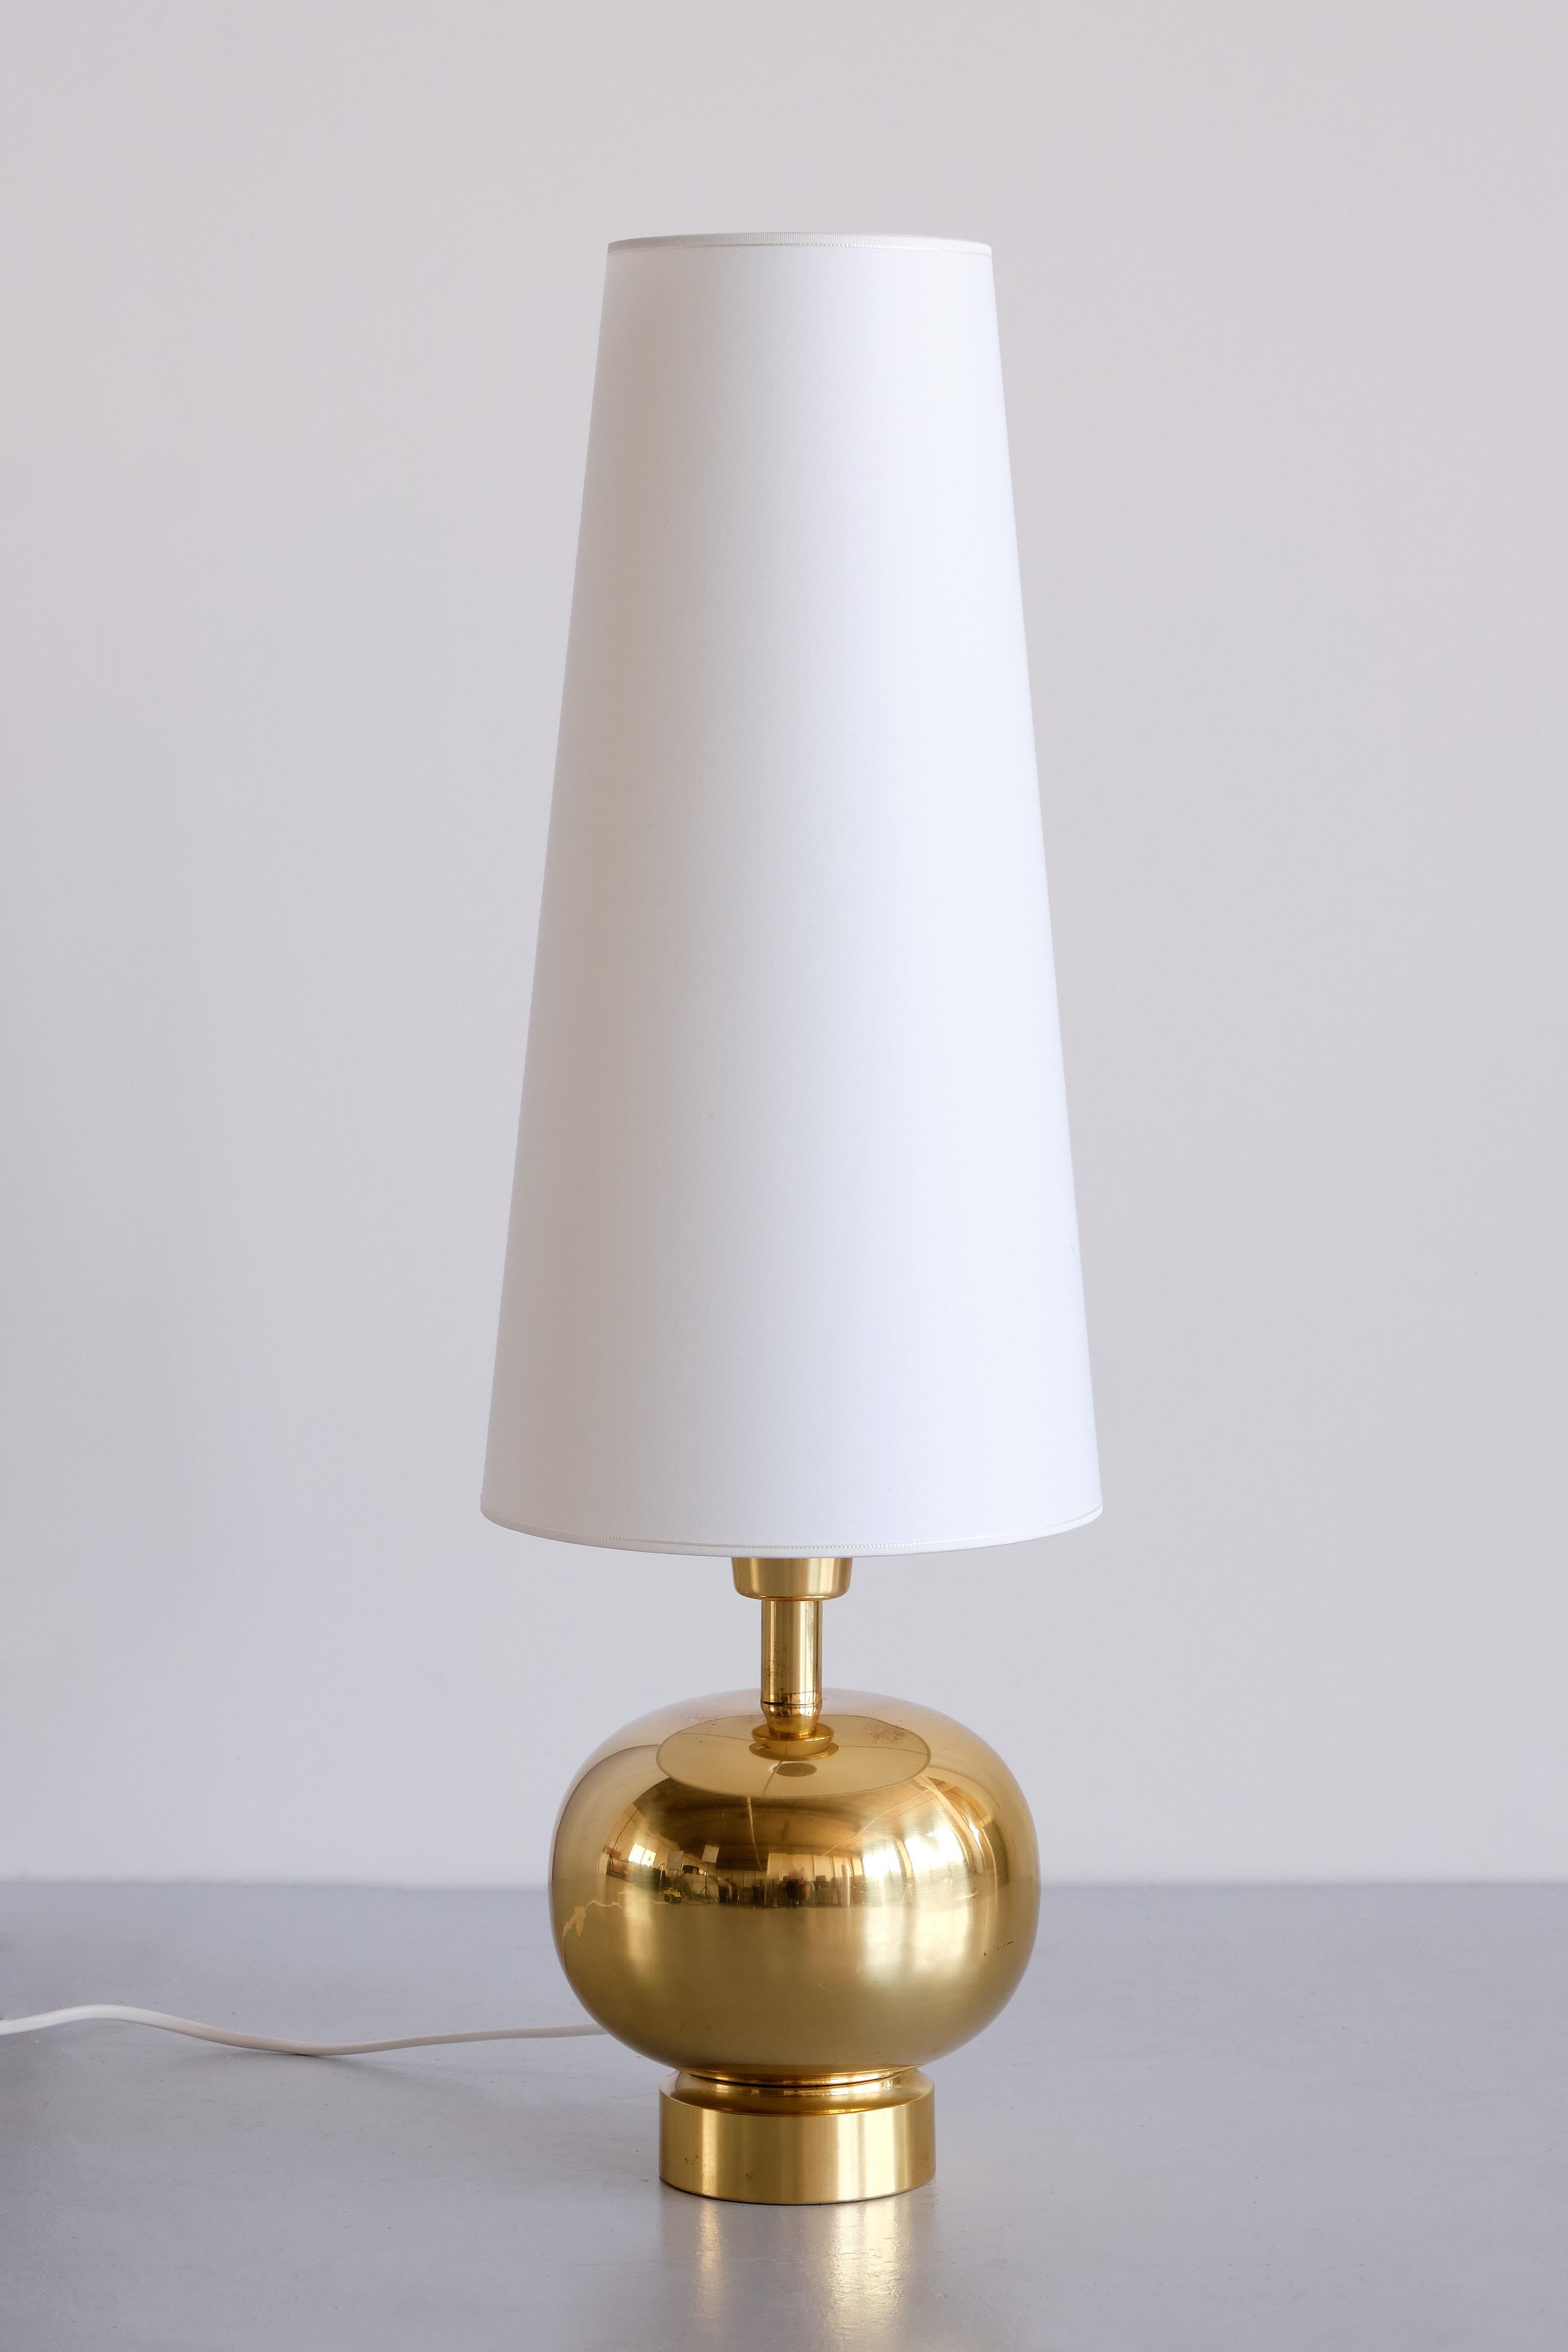 Cette étonnante lampe de table a été produite par le fabricant suédois Aneta dans la ville de Växjö dans les années 1970. L'élégante base en forme de sphère est en laiton poli. L'abat-jour haut et conique a été rénové dans une couleur ivoire et